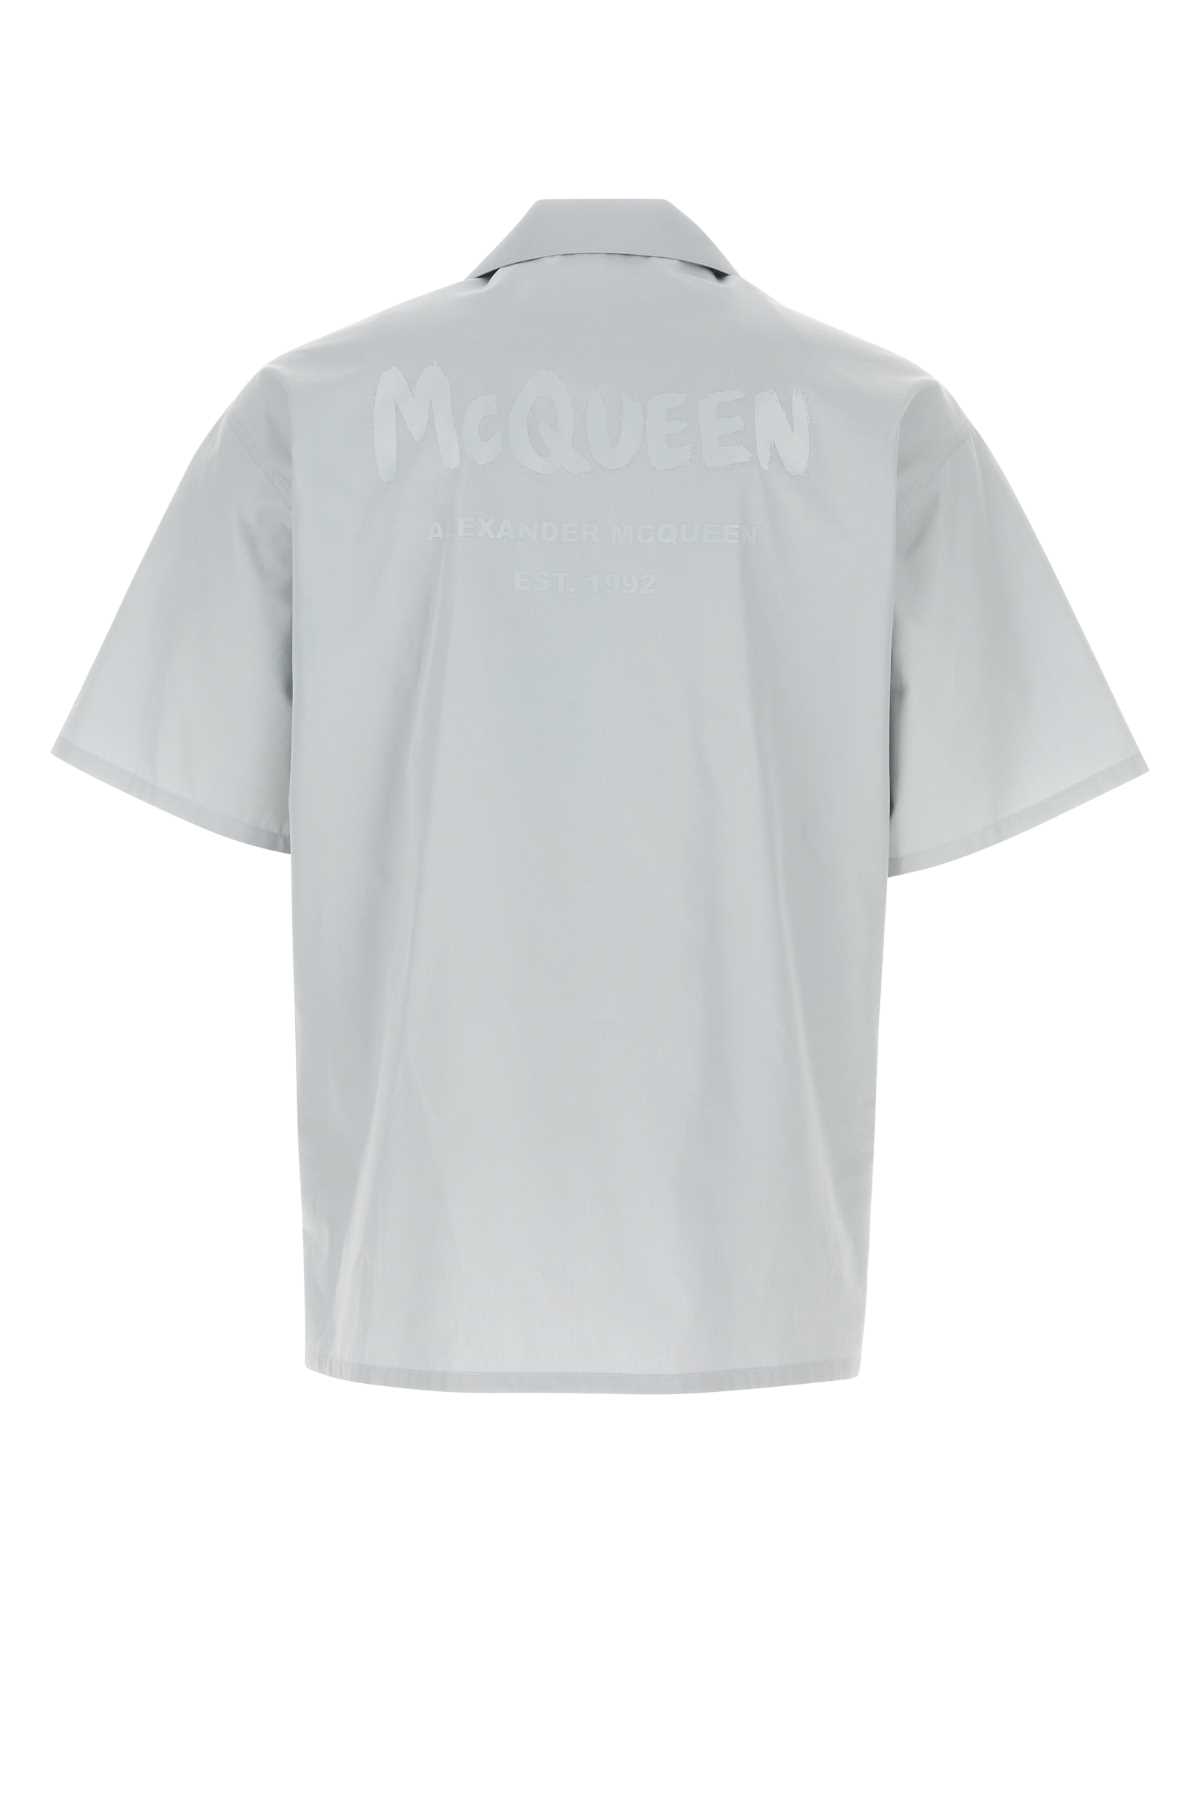 Alexander Mcqueen Grey Poplin Shirt In 0902